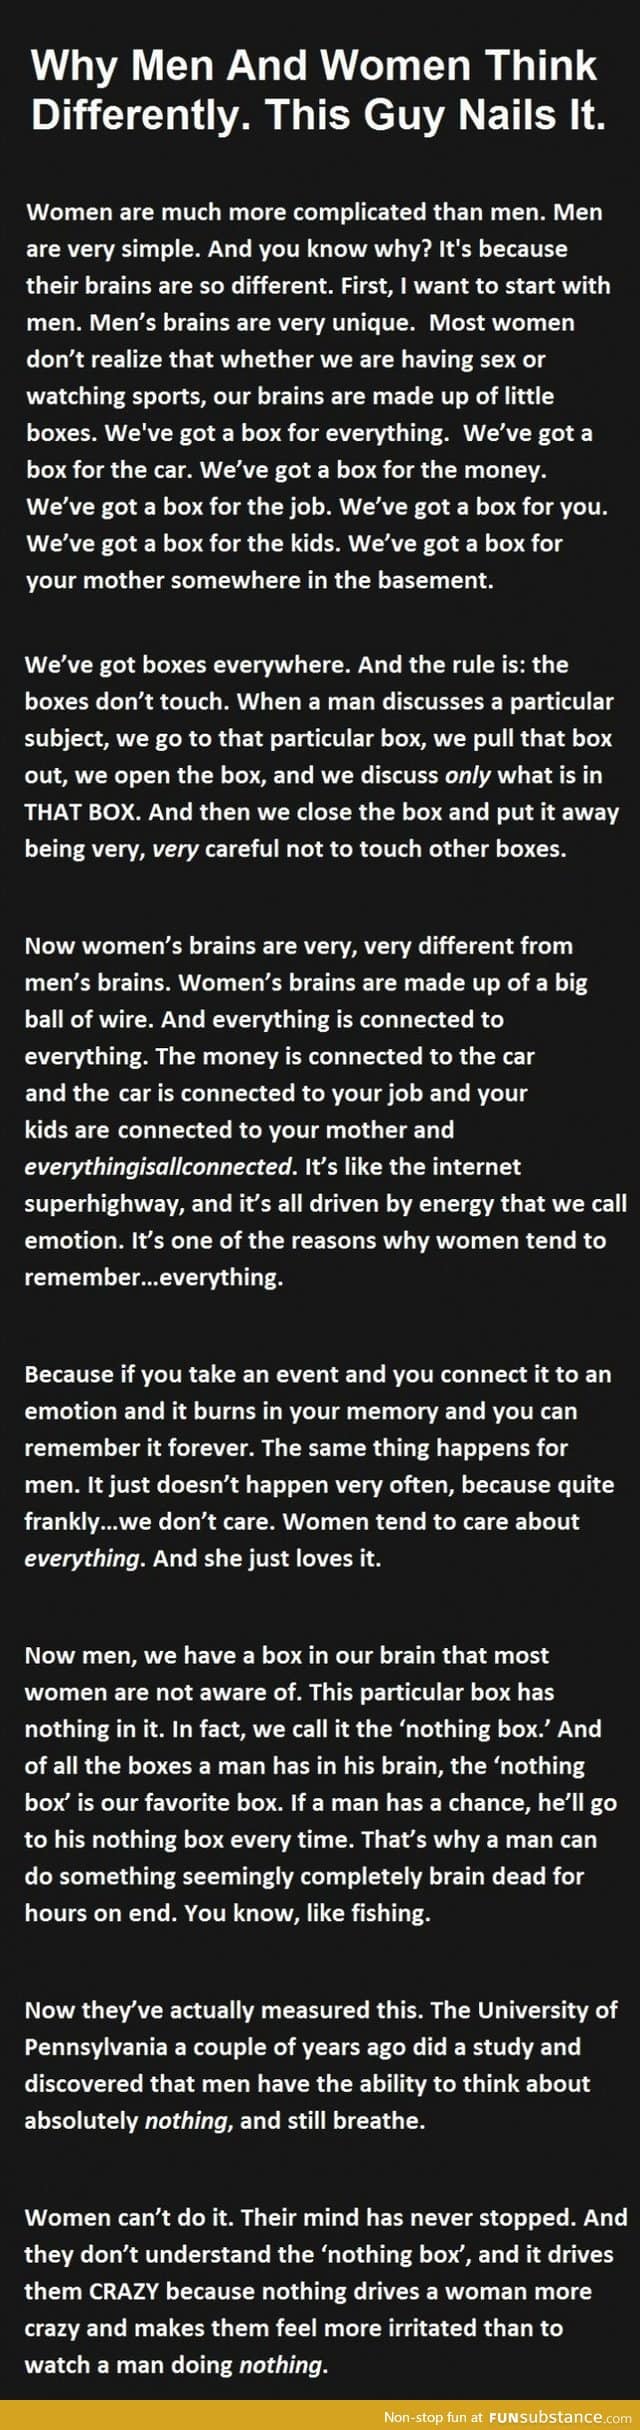 Men's vs Women's brains